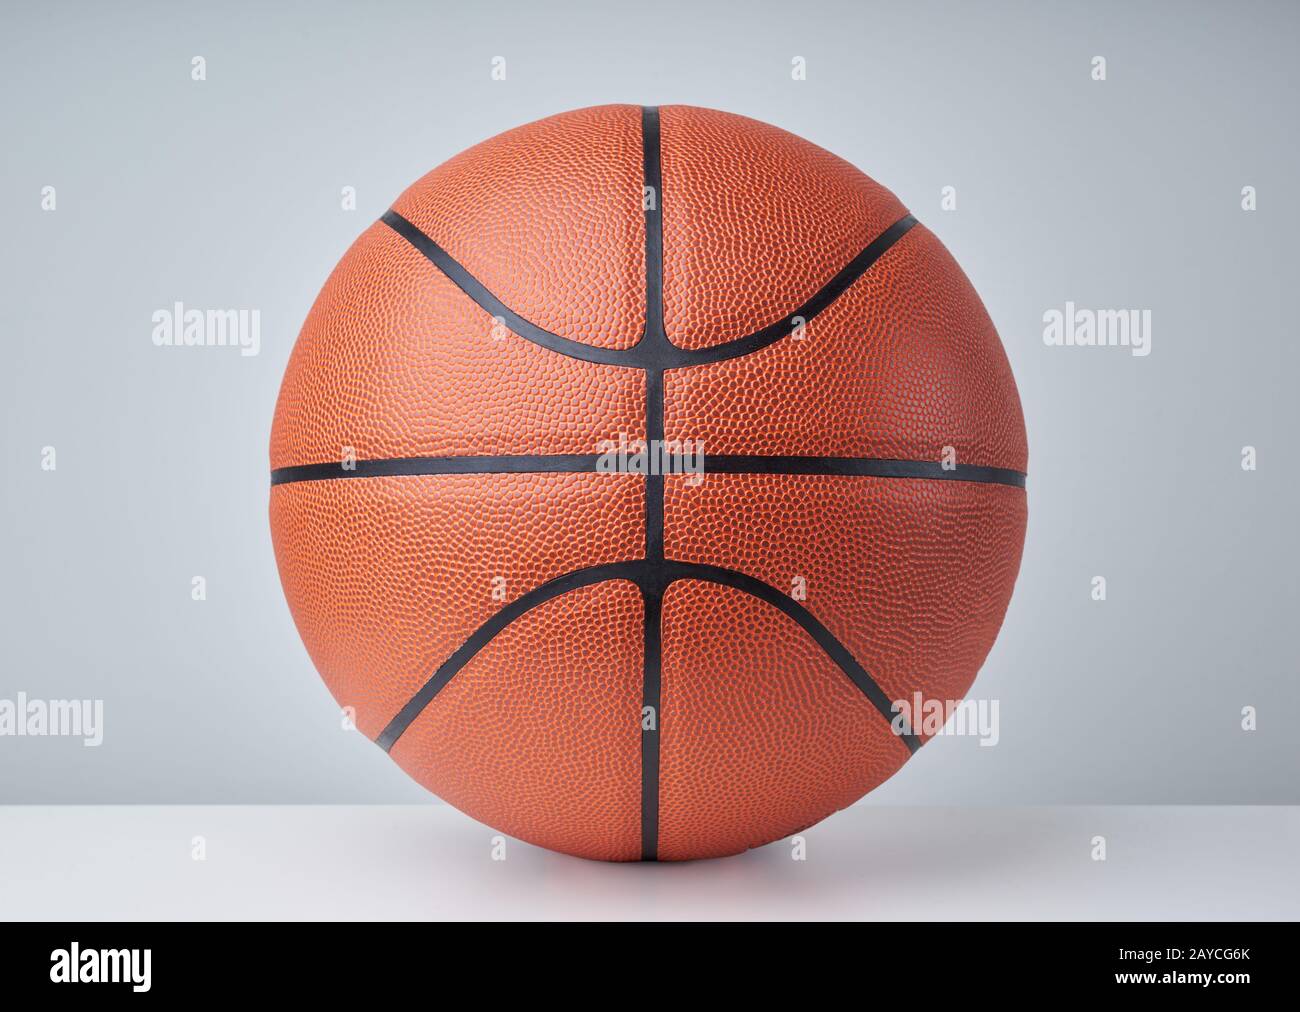 Basket-ball ball close up image sur fond gris clair. Banque D'Images